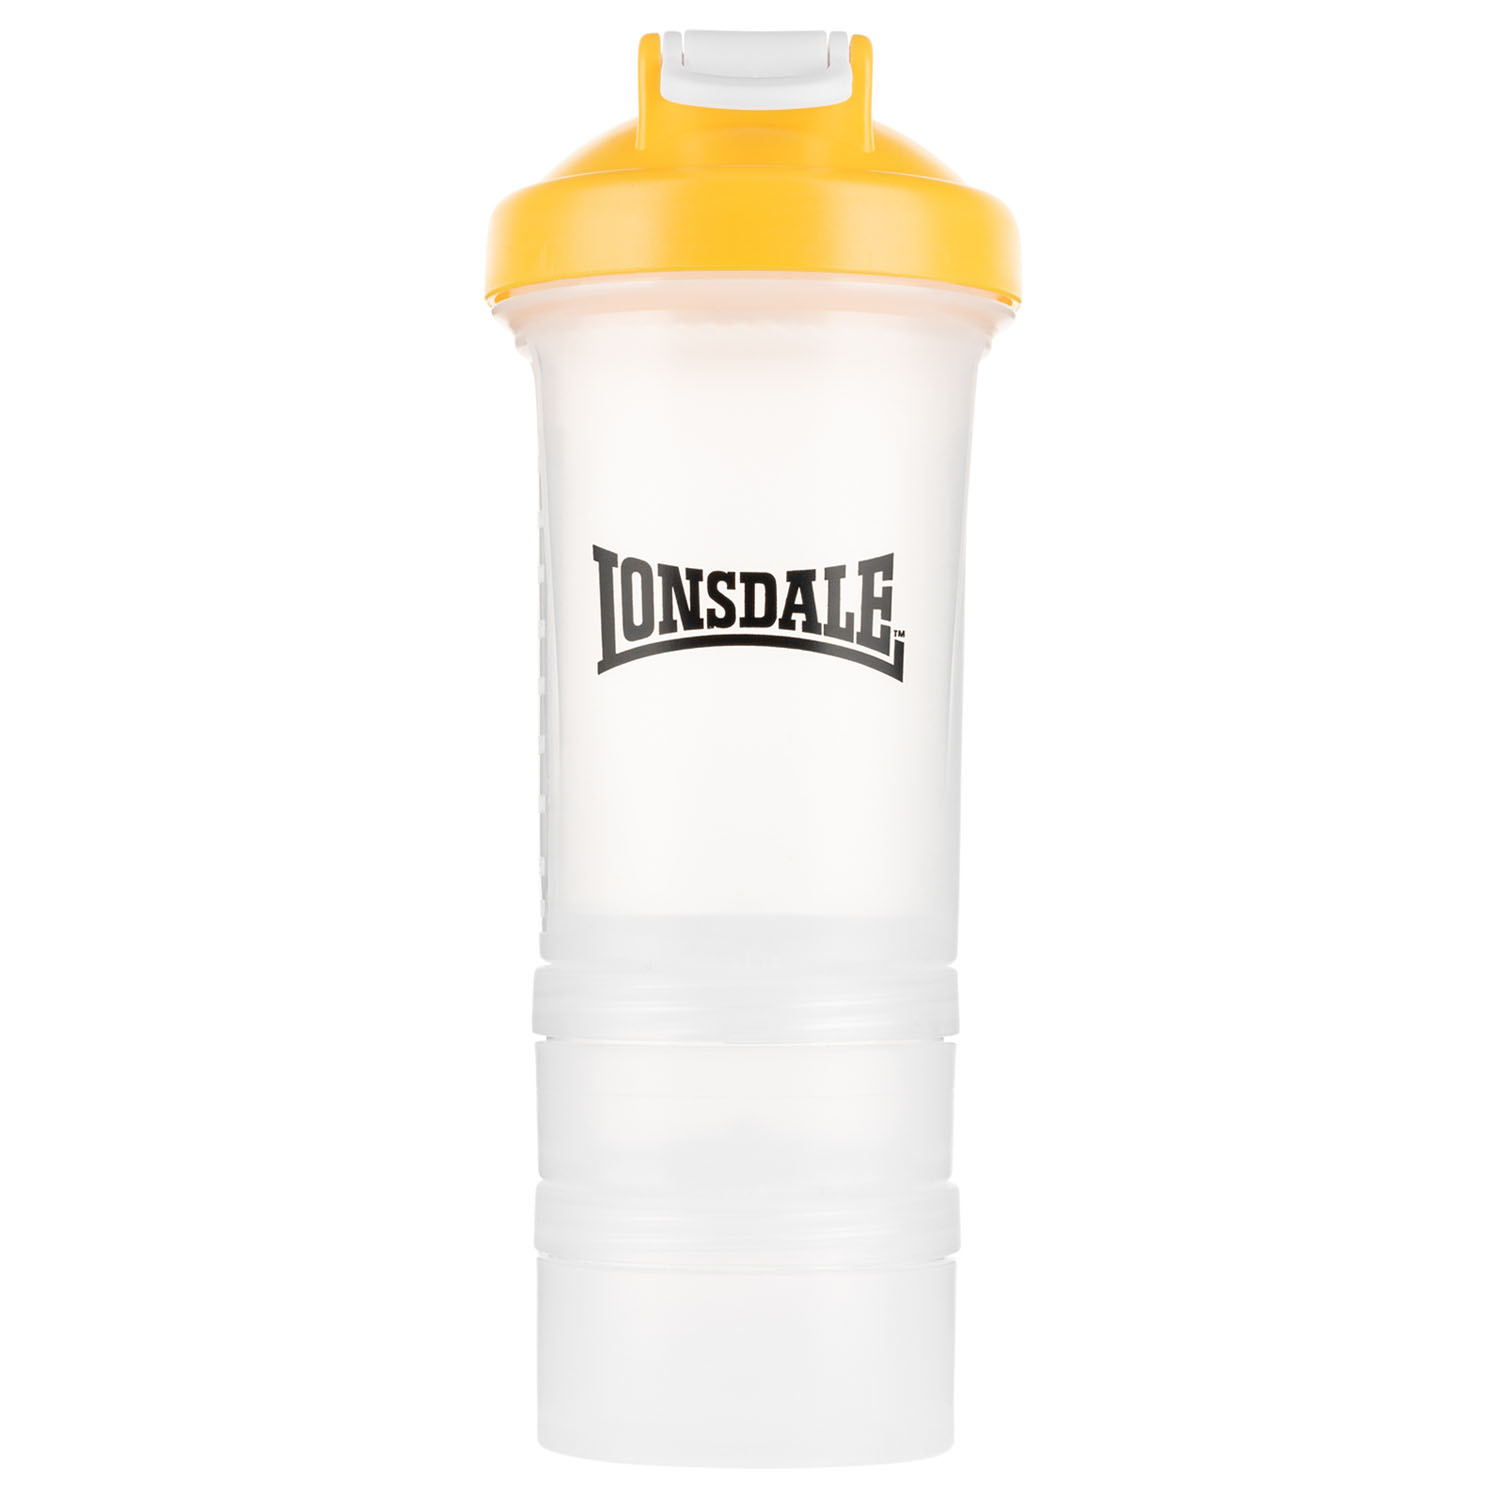 Lonsdale Shaker, Ult, gelb